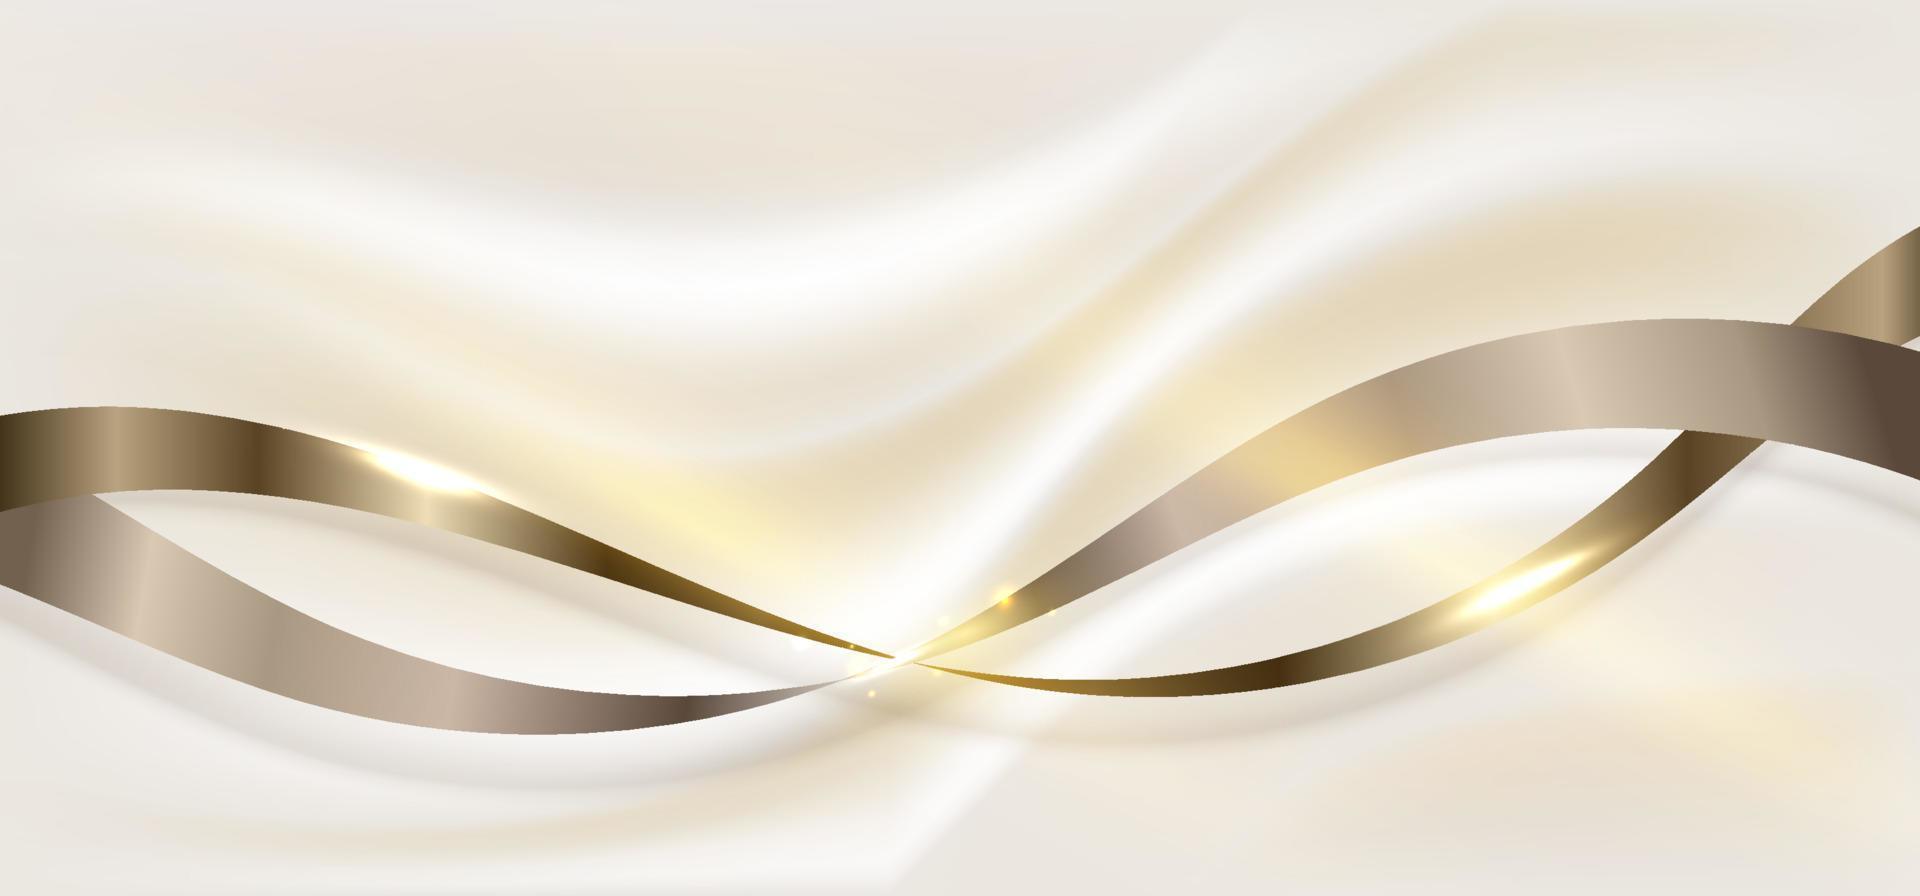 elementos de fita dourada elegantes 3d abstratos e efeito de iluminação provocando decoração de brilho no estilo de luxo de fundo creme vetor